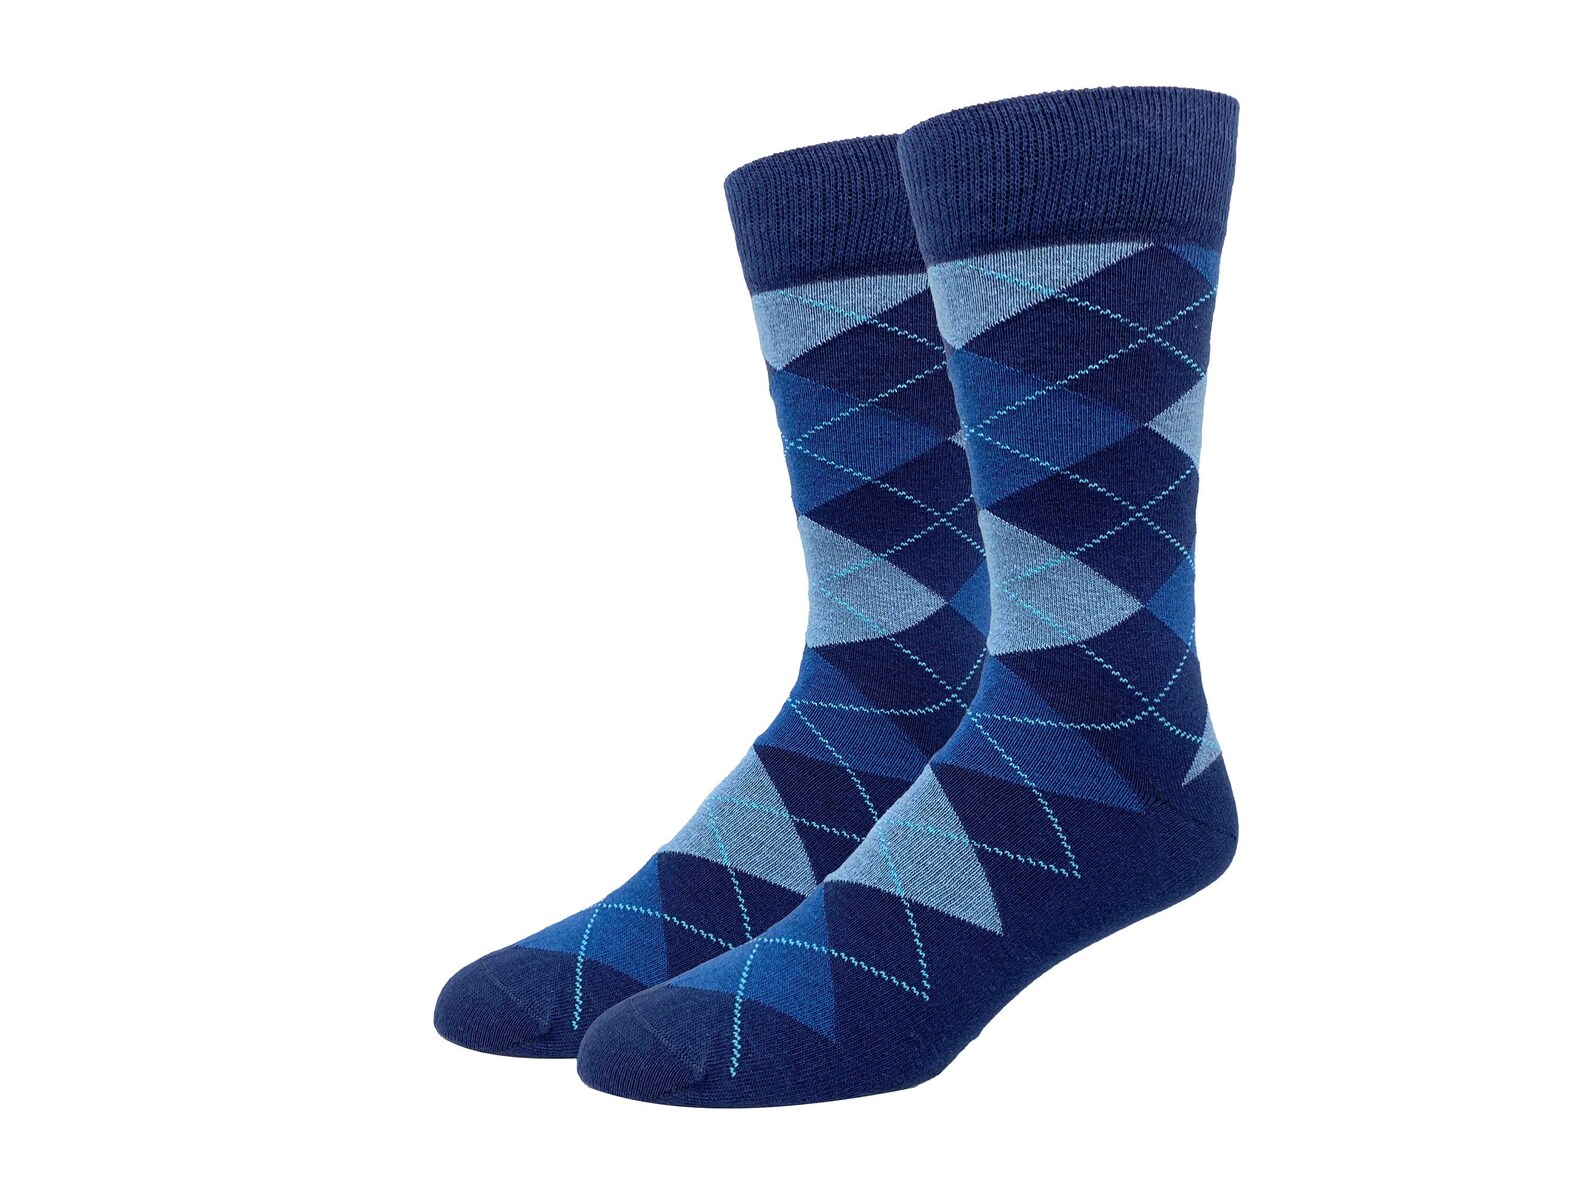 Men's Socks Blue Argyle Socks Classic Socks Cotton | Etsy